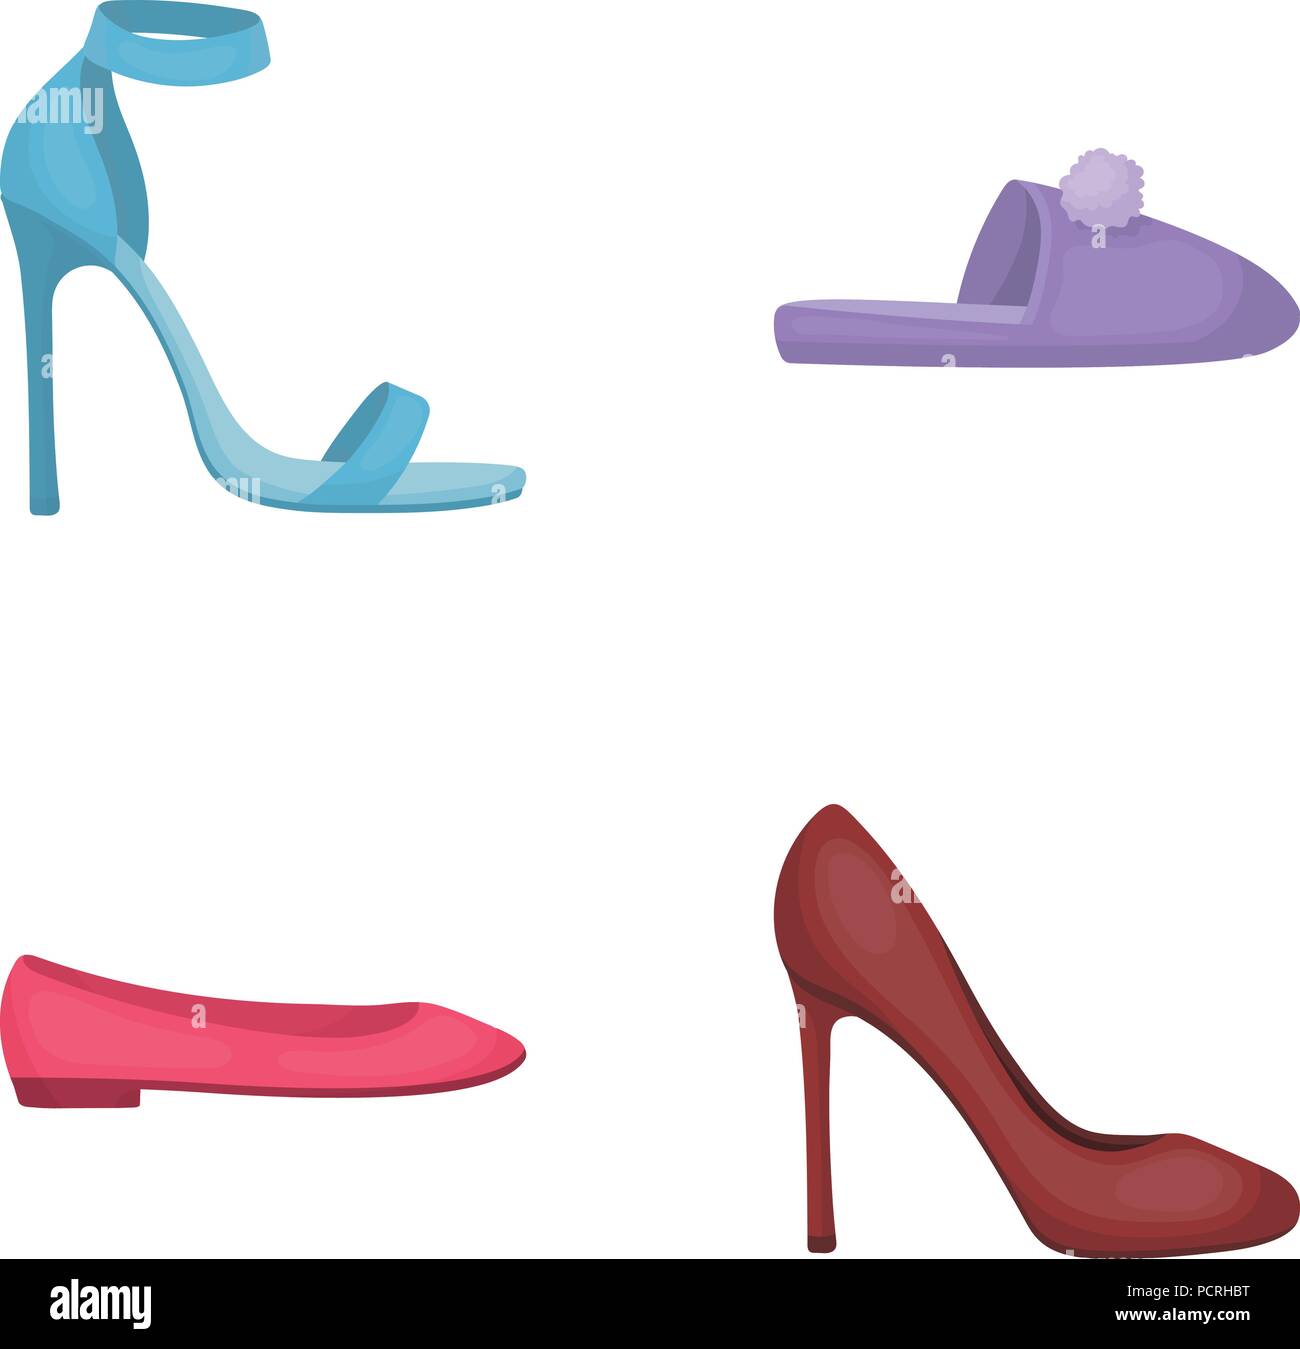 Sandalias de tacón alto de color azul, lila caseros zapatillas con un  pampon, Rosa mujeres del ballet flats, marrón los zapatos de tacón alto.  Los zapatos de colección de iconos en coche